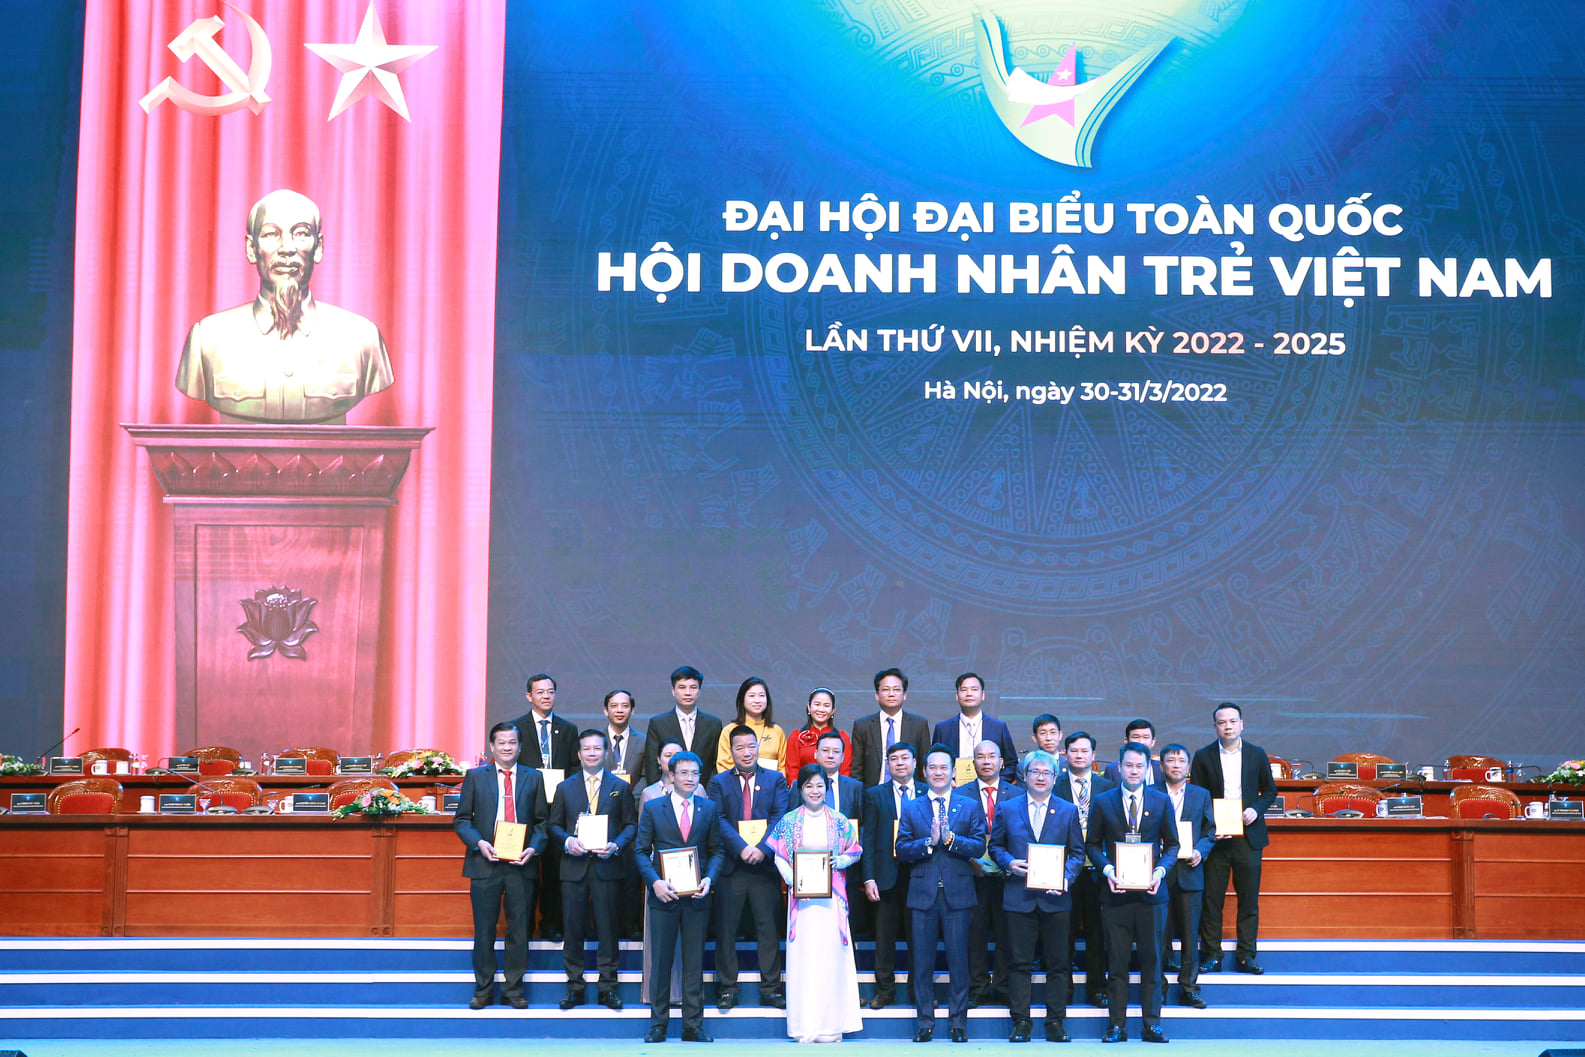 Nhân dịp này, Thường trực Hội doanh nhân trẻ Việt Nam đã được đón nhận Huân chương Lao động hạng Ba vì những đóng góp tích cực, cống hiến không ngừng của các cấp Hội trong nhiệm kỳ qua